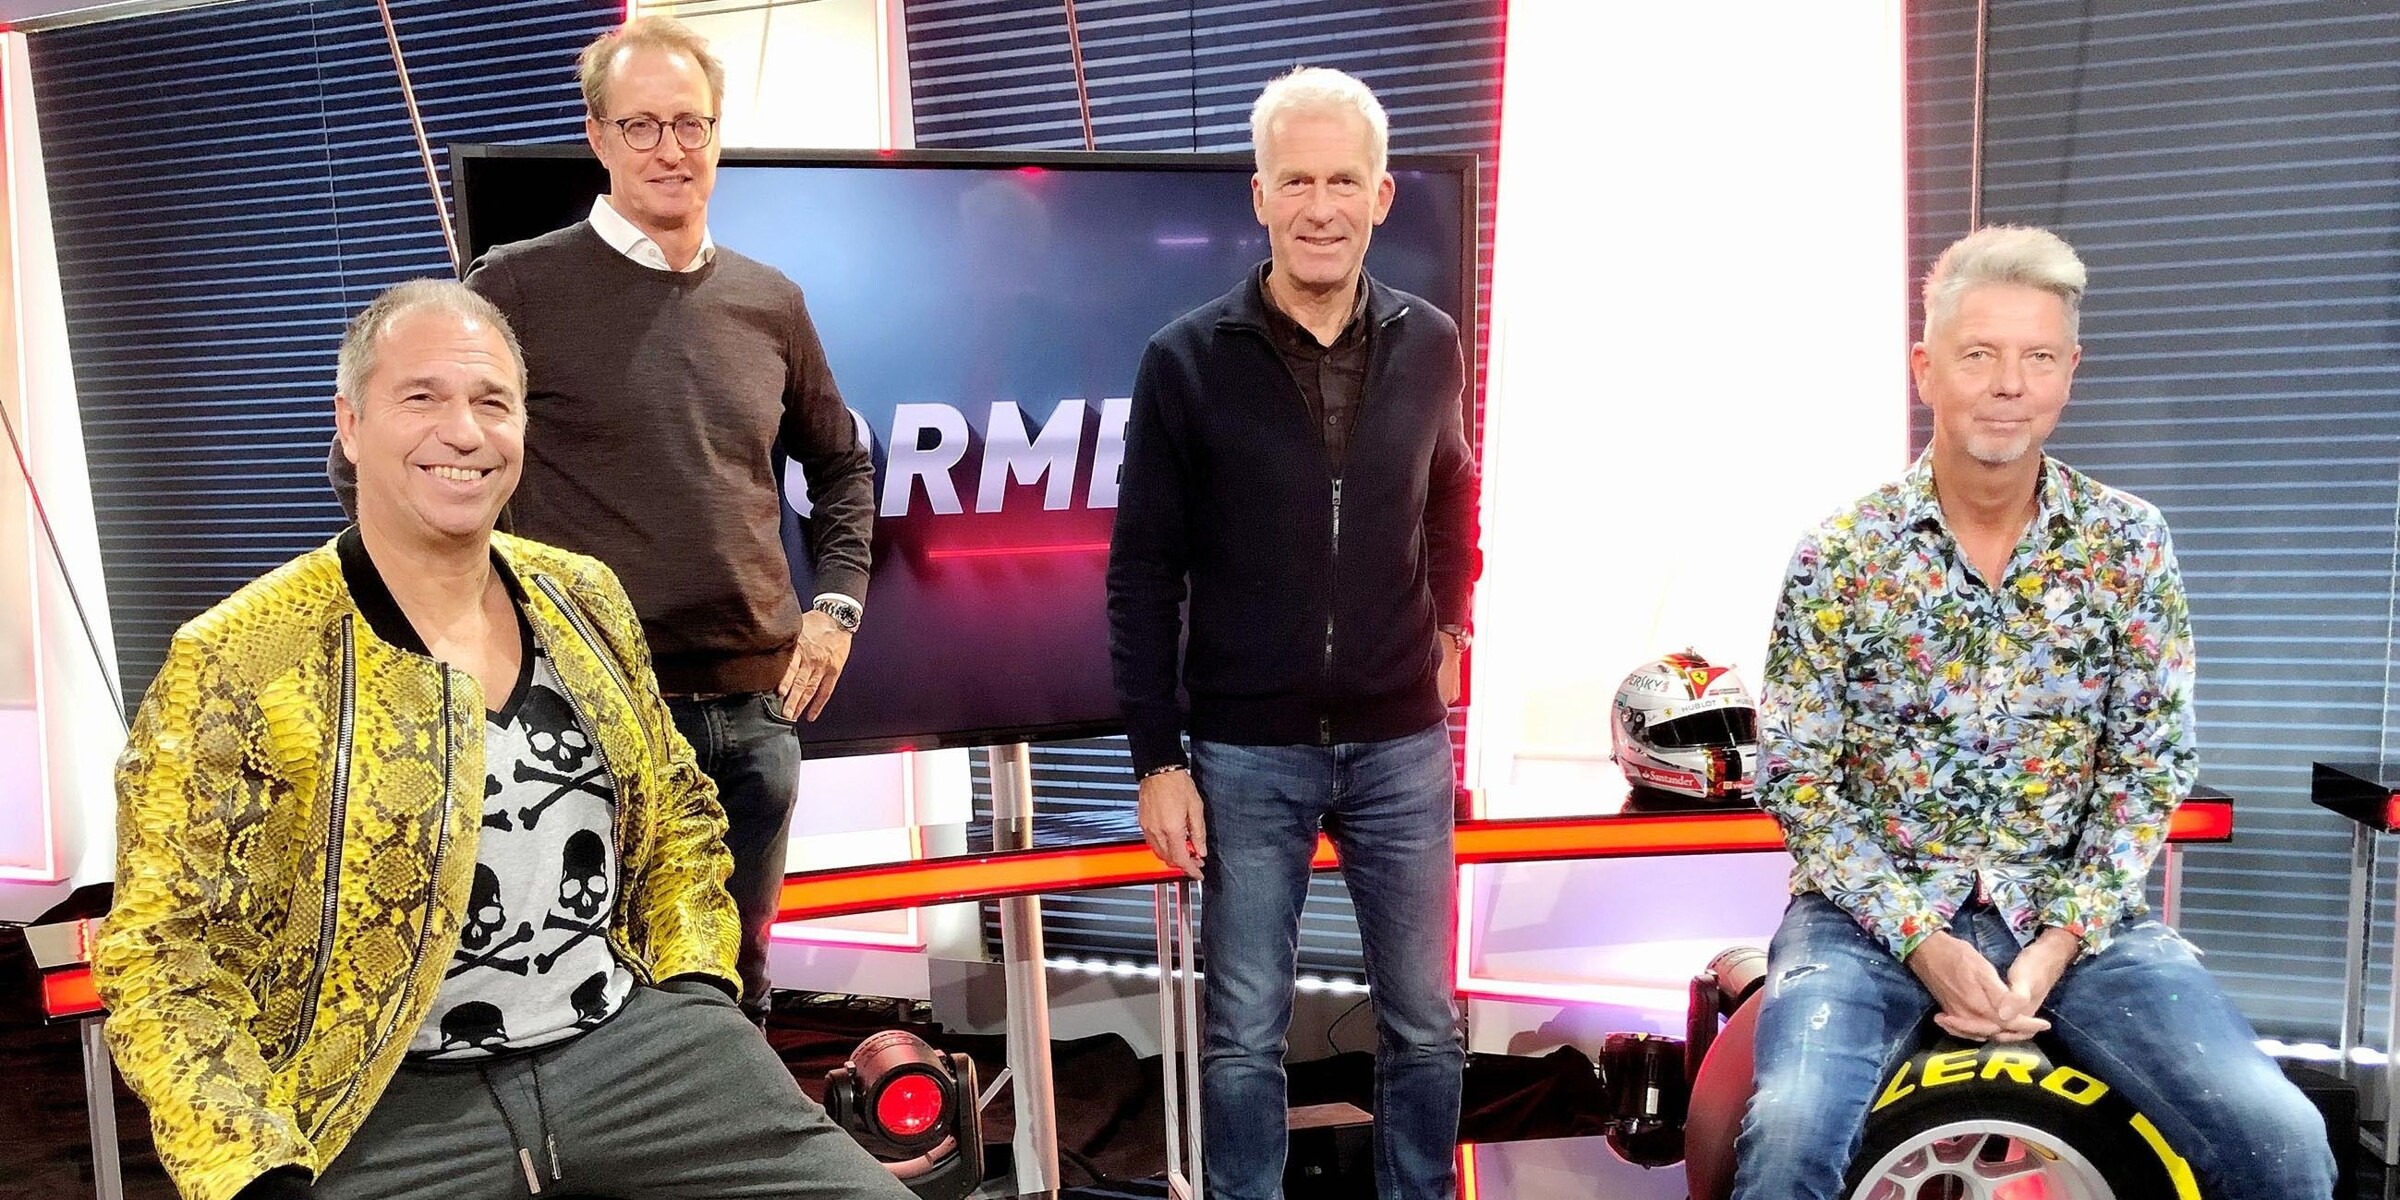 RTL steigt aus Was das für die Formel 1 im Free-TV bedeutet